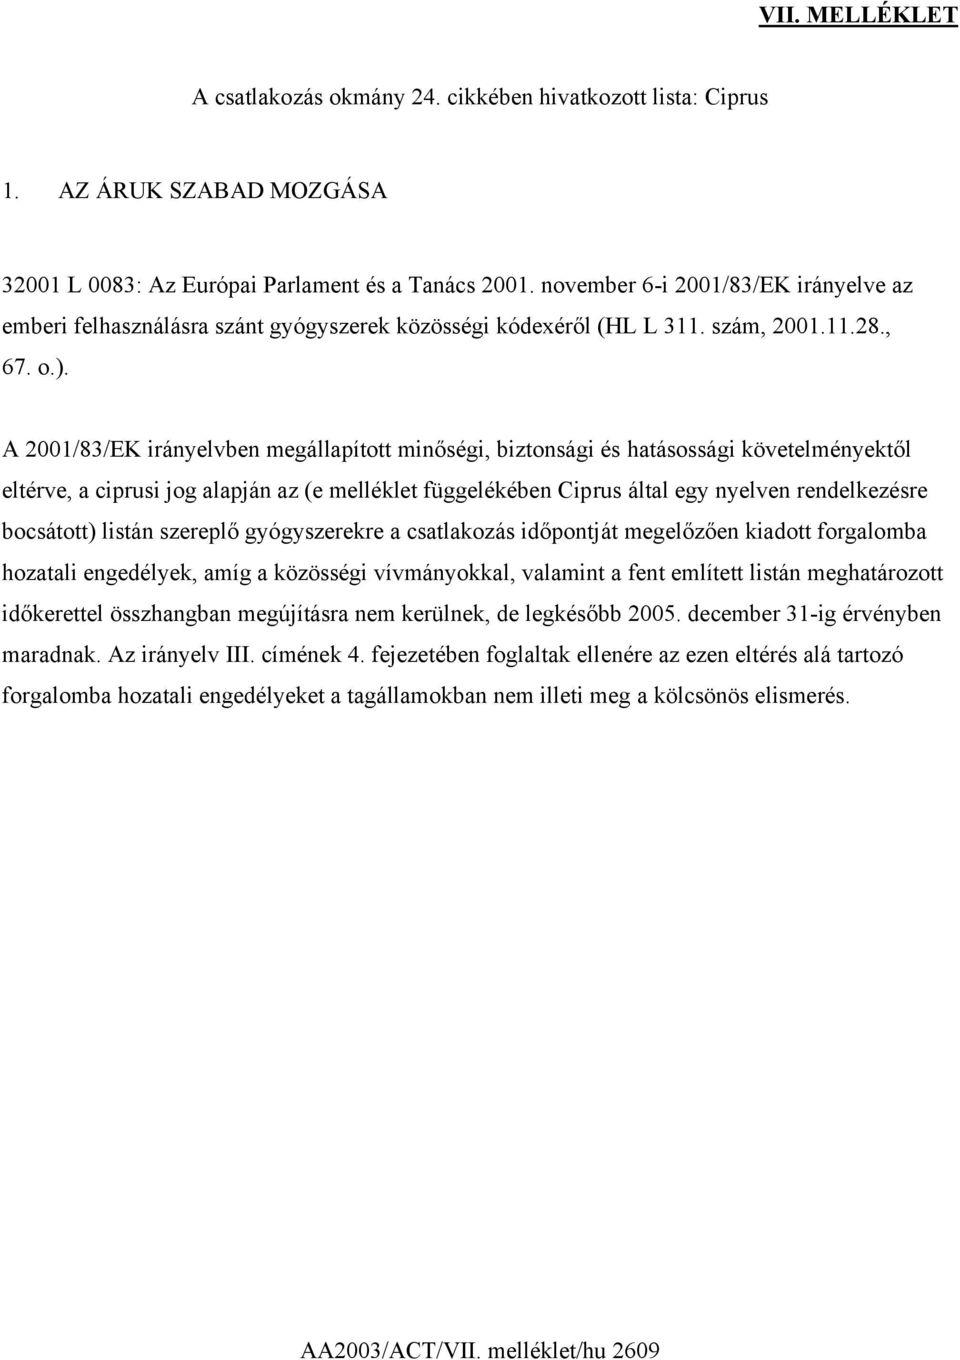 A 2001/83/EK irányelvben megállapított minőségi, biztonsági és hatásossági követelményektől eltérve, a ciprusi jog alapján az (e melléklet függelékében Ciprus által egy nyelven rendelkezésre